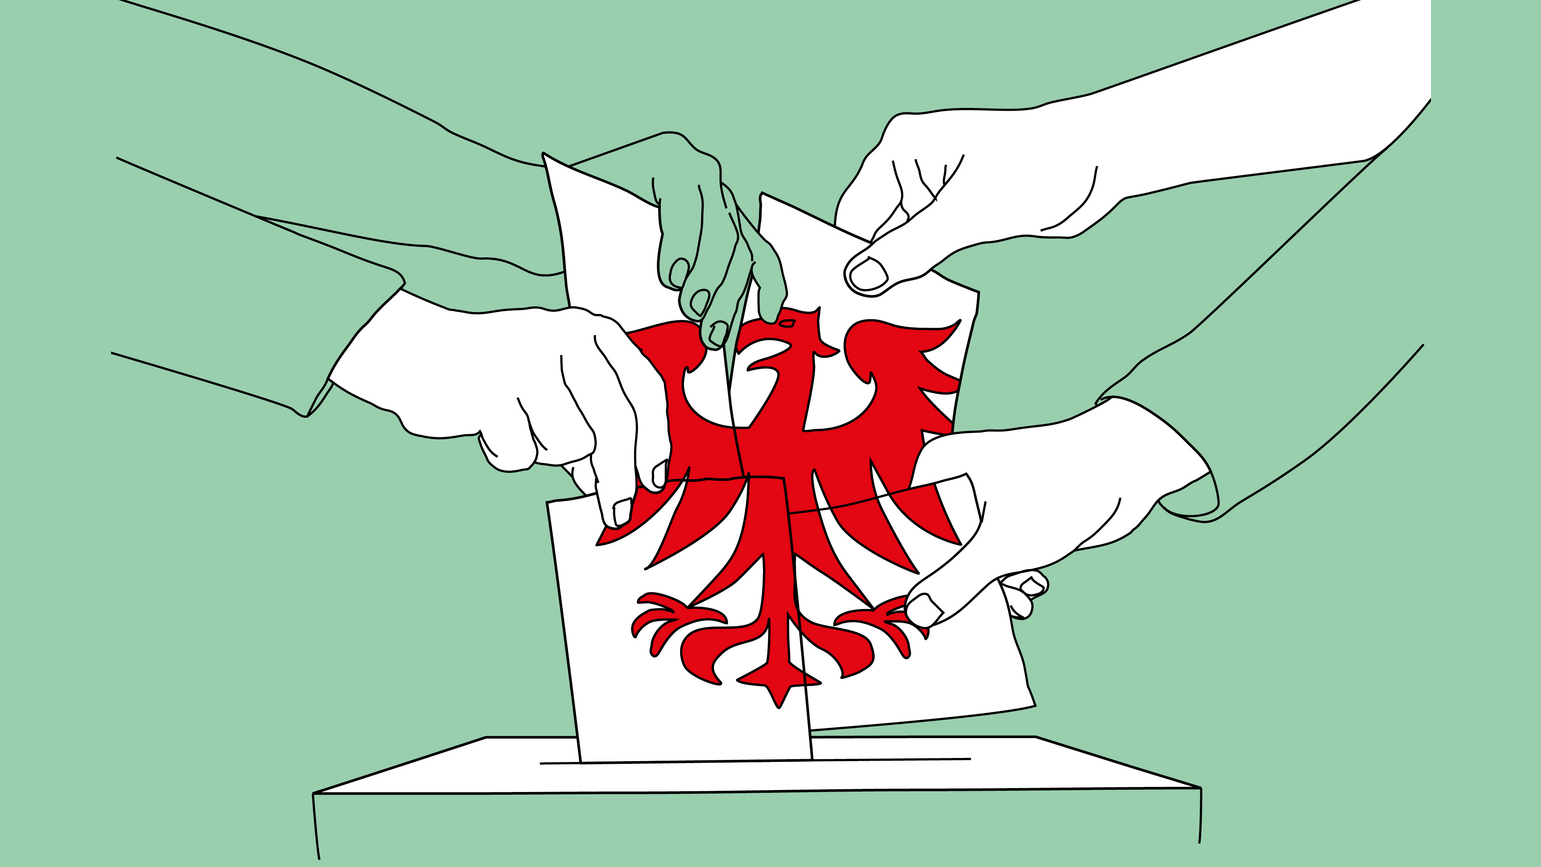 Auf grünem Grund werfen verschiedene Hände Wahlzettel in eine Wahlurne. Die Zettel ergeben zusammen Brandenburgs roten Adler